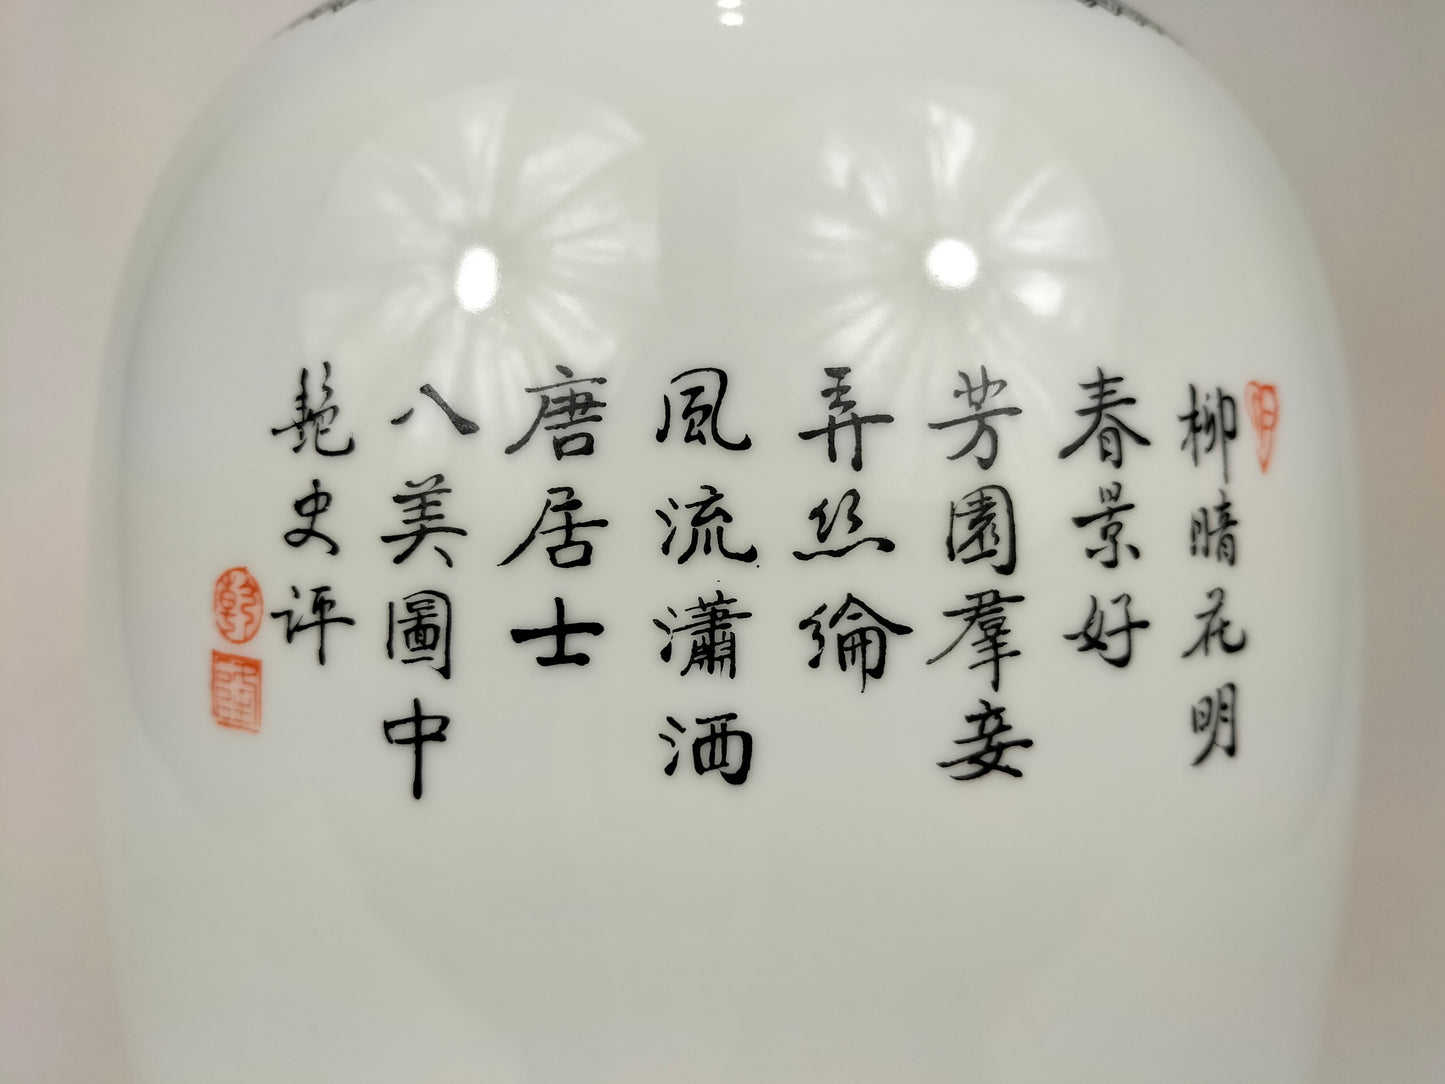 大型中国彩绘花瓶，饰有花园场景 // 景德镇 - 20 世纪